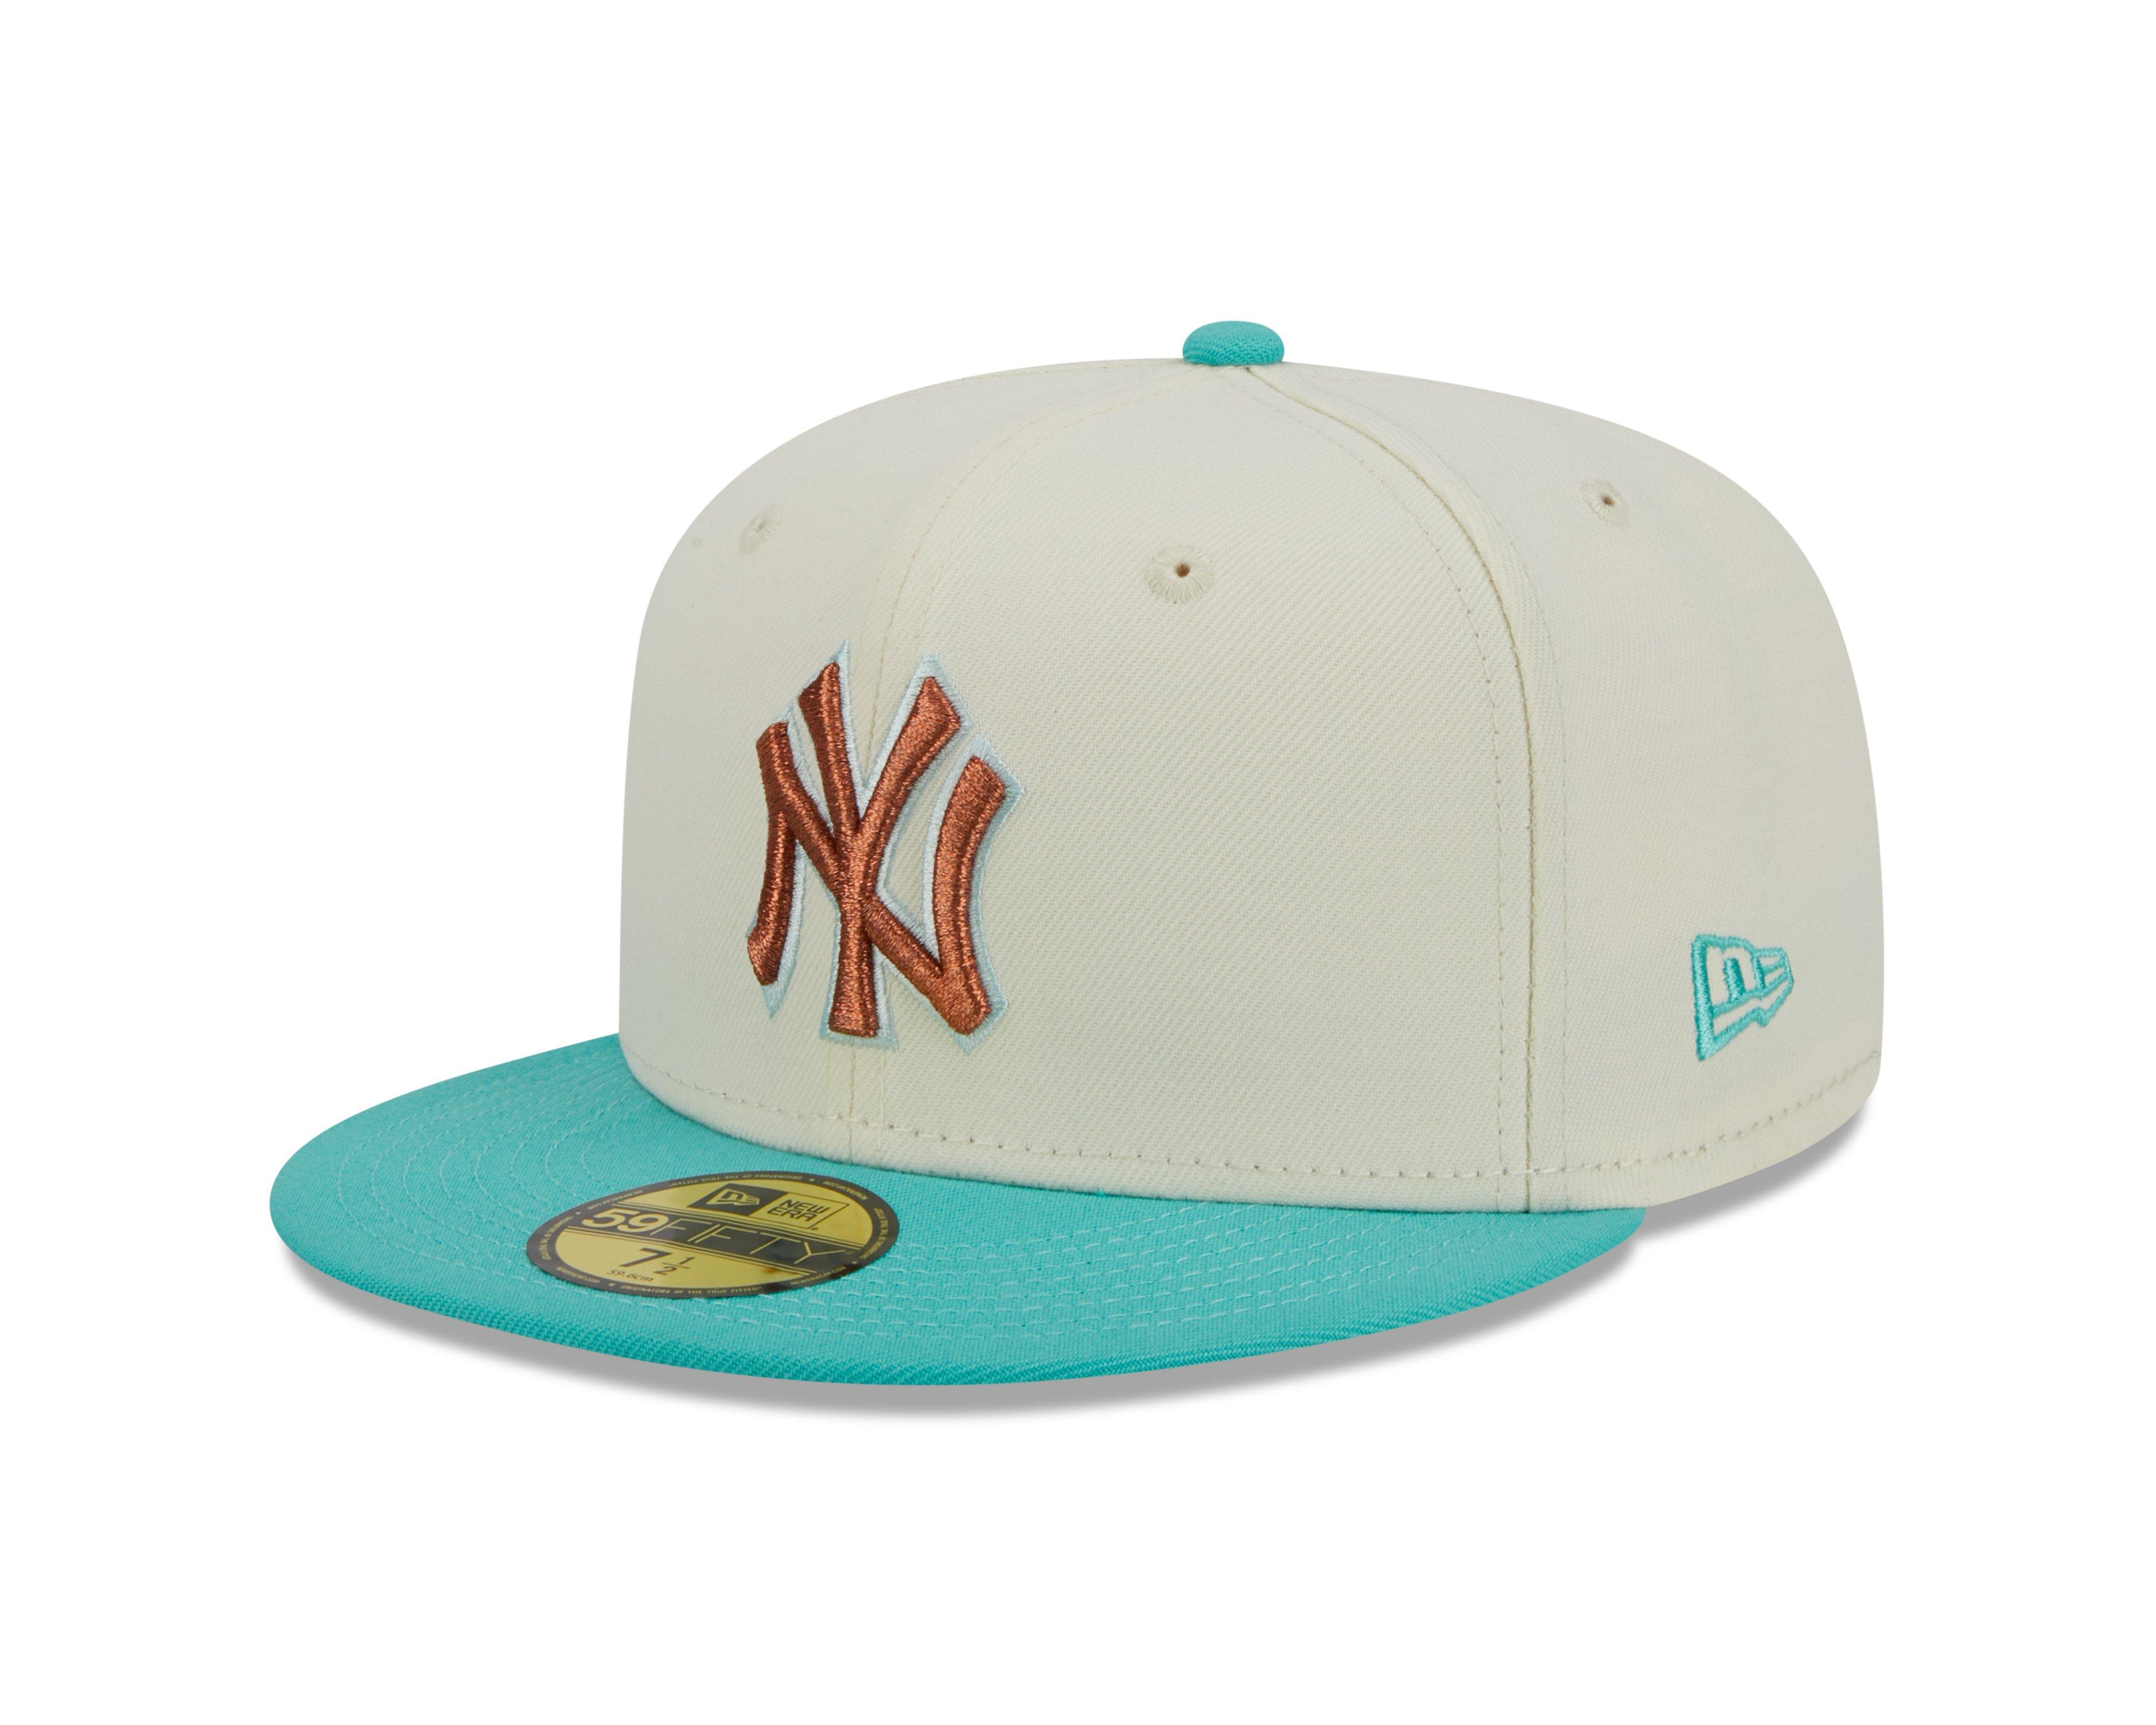 New Era New York Yankees Dark Green Basic 59FIFTY Fitted Hat - Hibbett